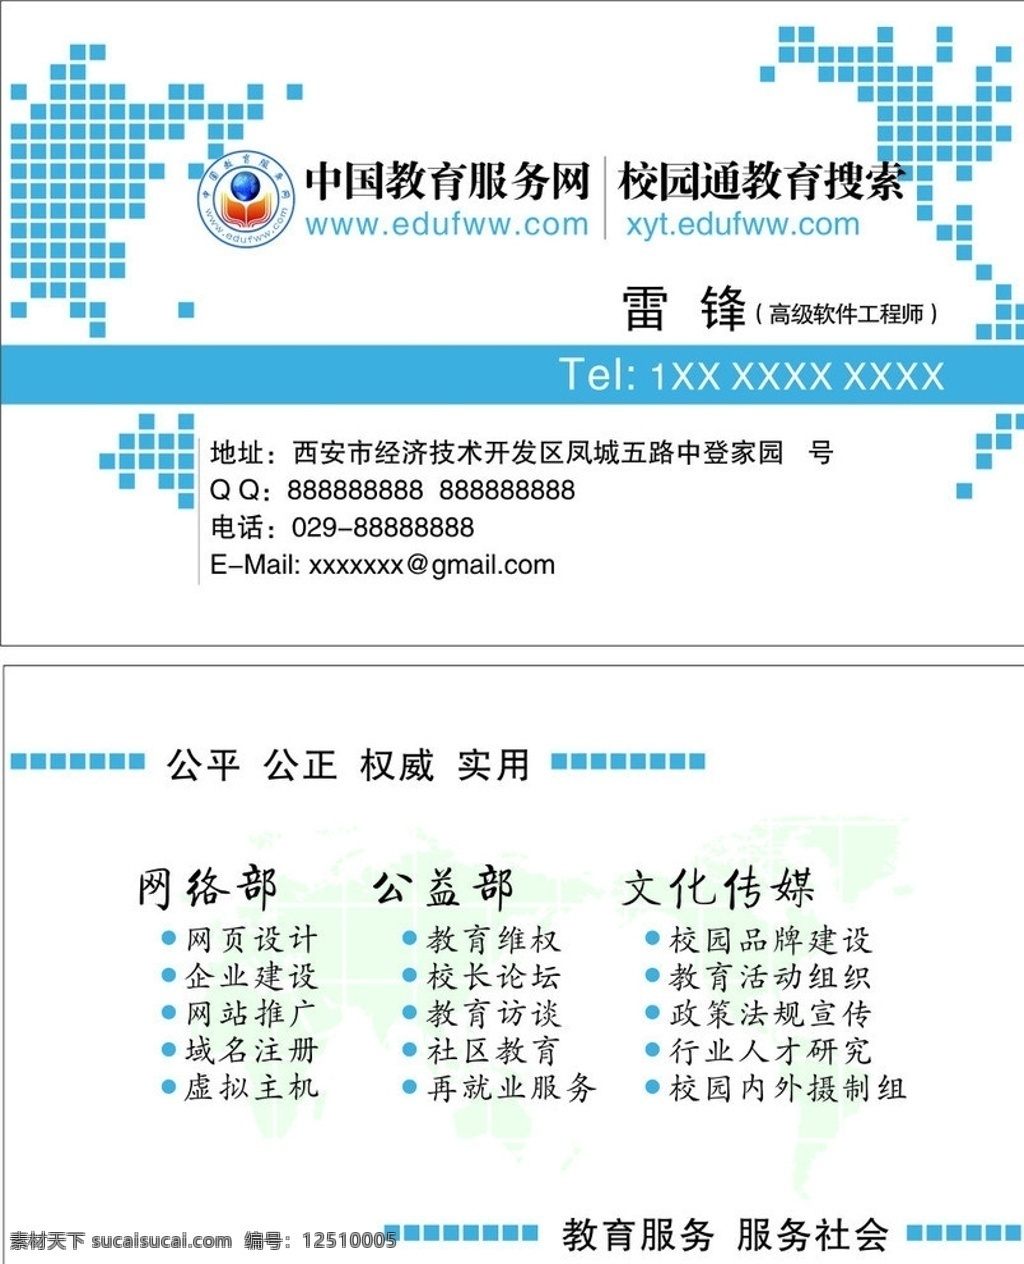 中国 教育 服务网 名片 名片卡片 矢量